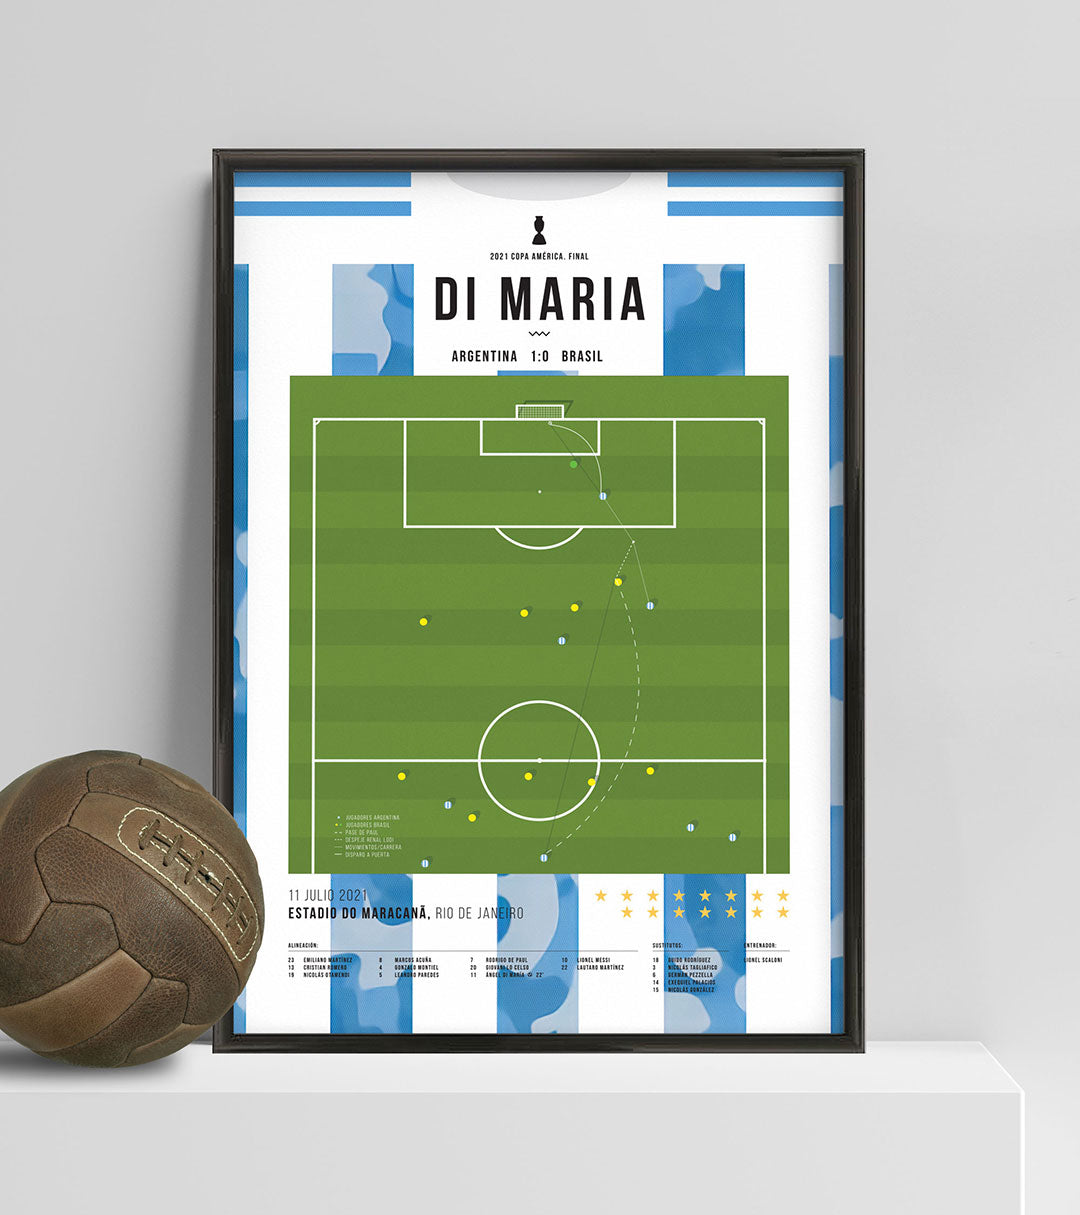 Gol de Di María vs Brasil